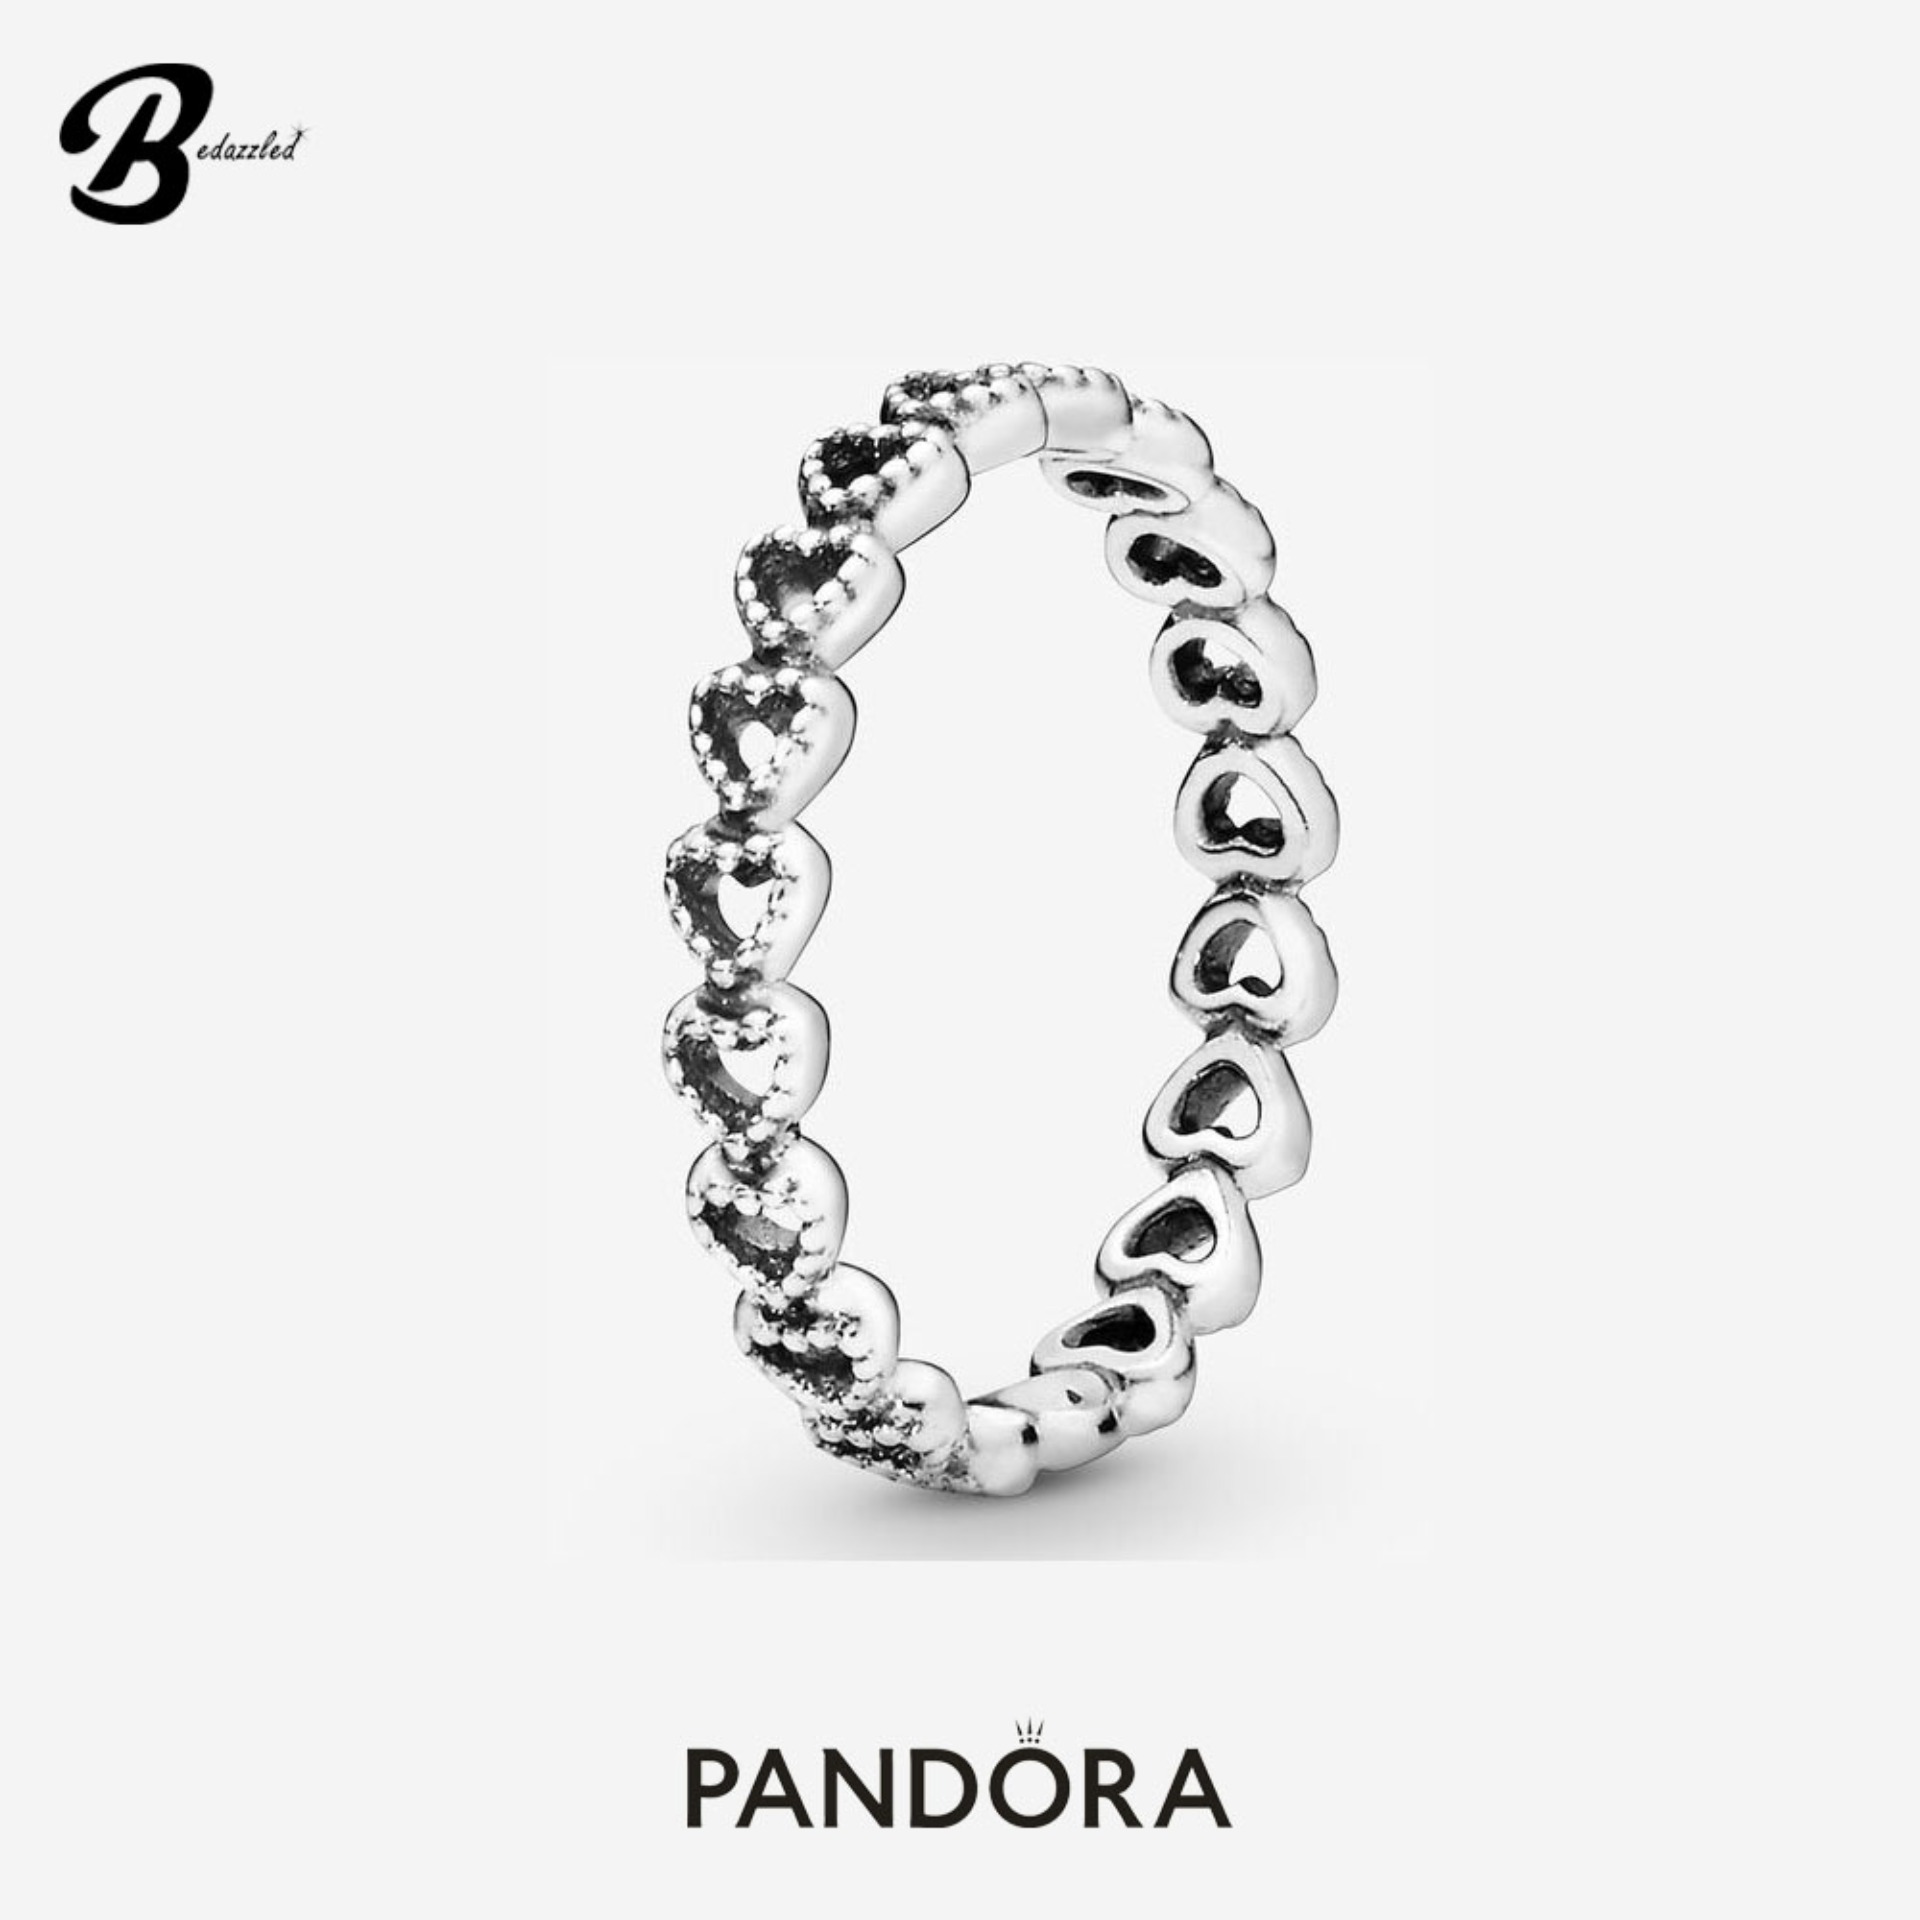 Pandora Band of Hearts Ring 190980